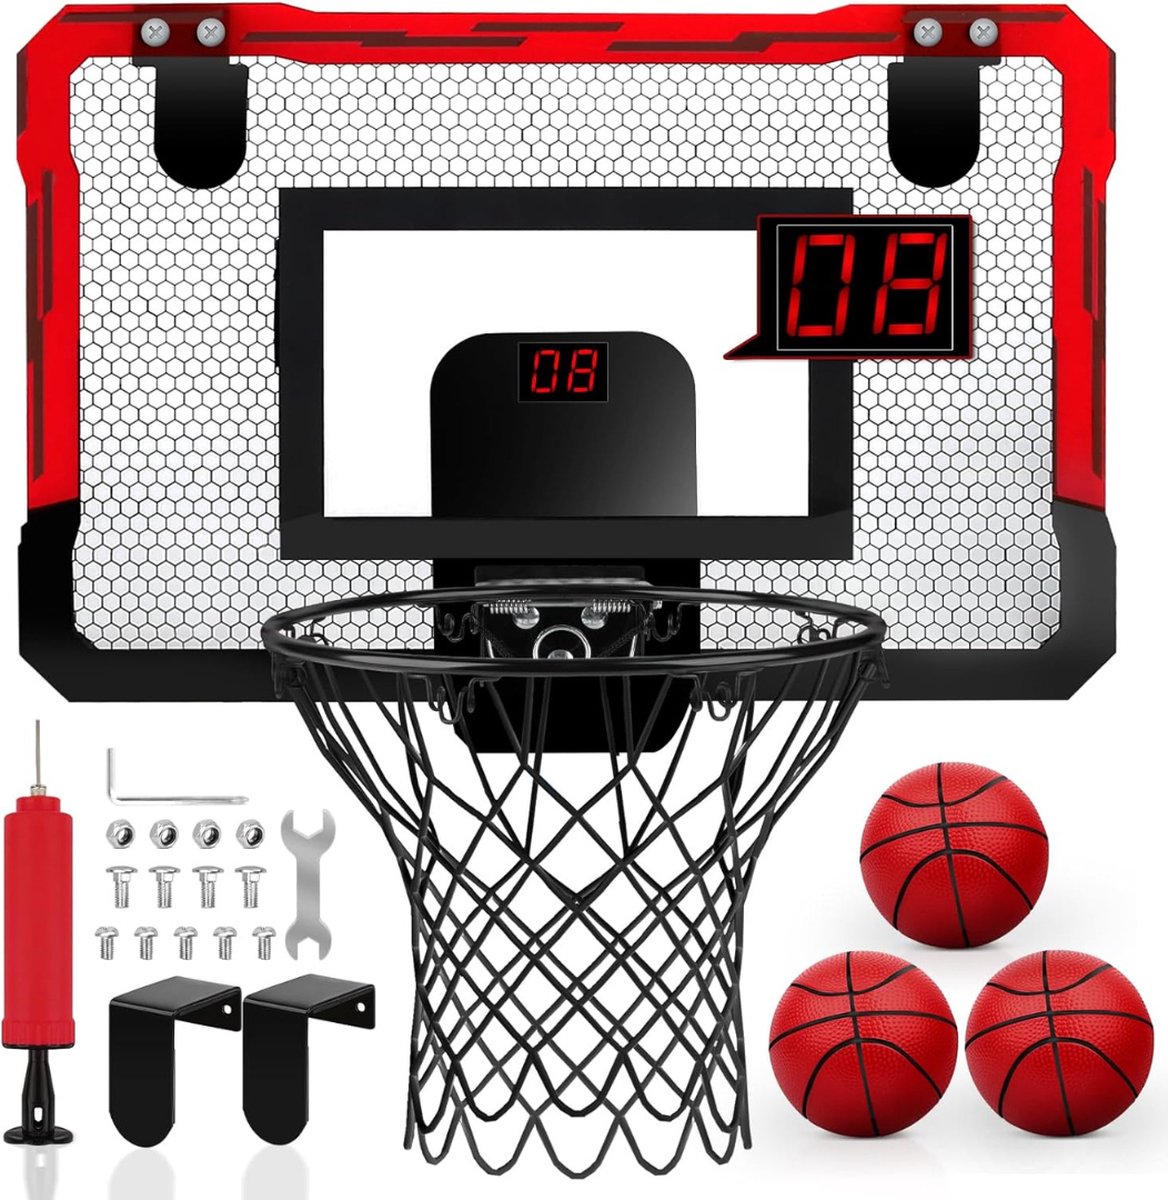 Mini Basketbalkorf voor Kinderen met Elektronisch Scorebord - Inclusief 3 Ballen - Indoor Basketbalset - Rood - Merkloos